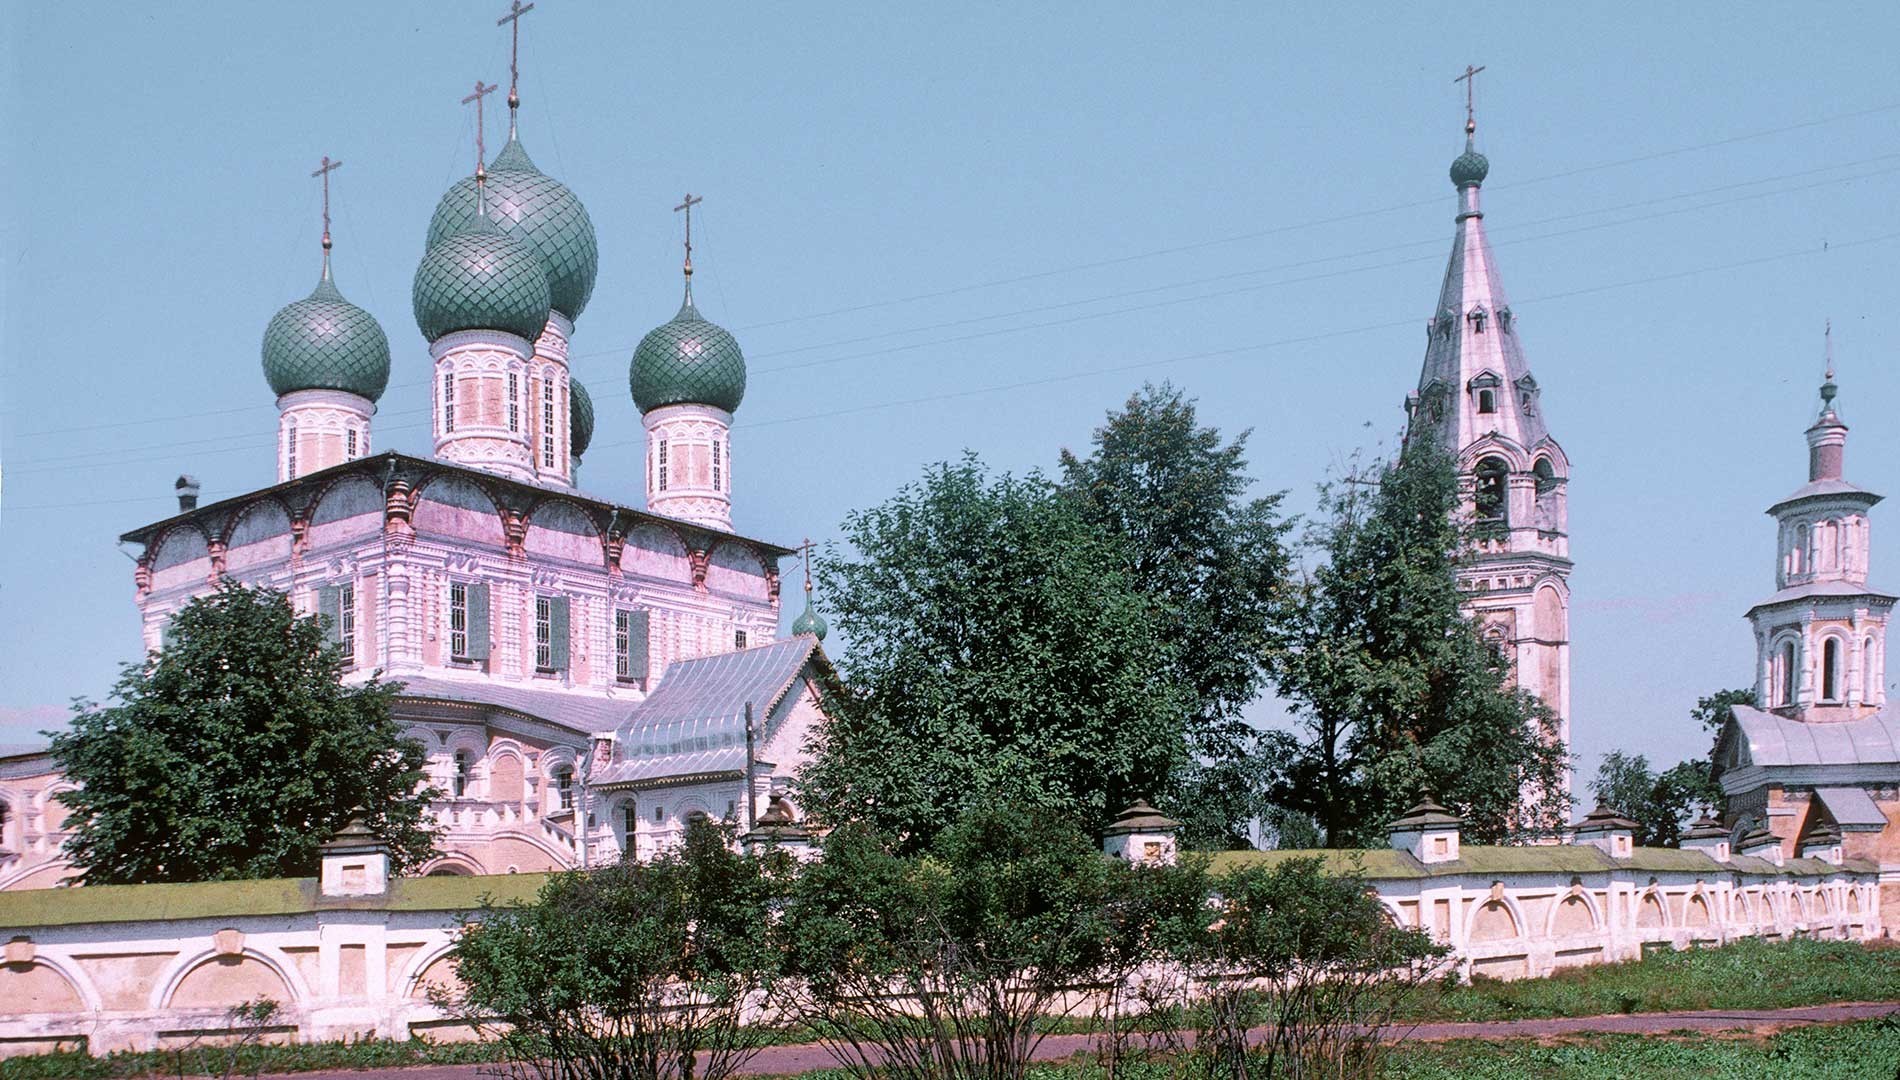 救世主復活大聖堂。南西の景観。鐘楼と正門。1997年7月25日。